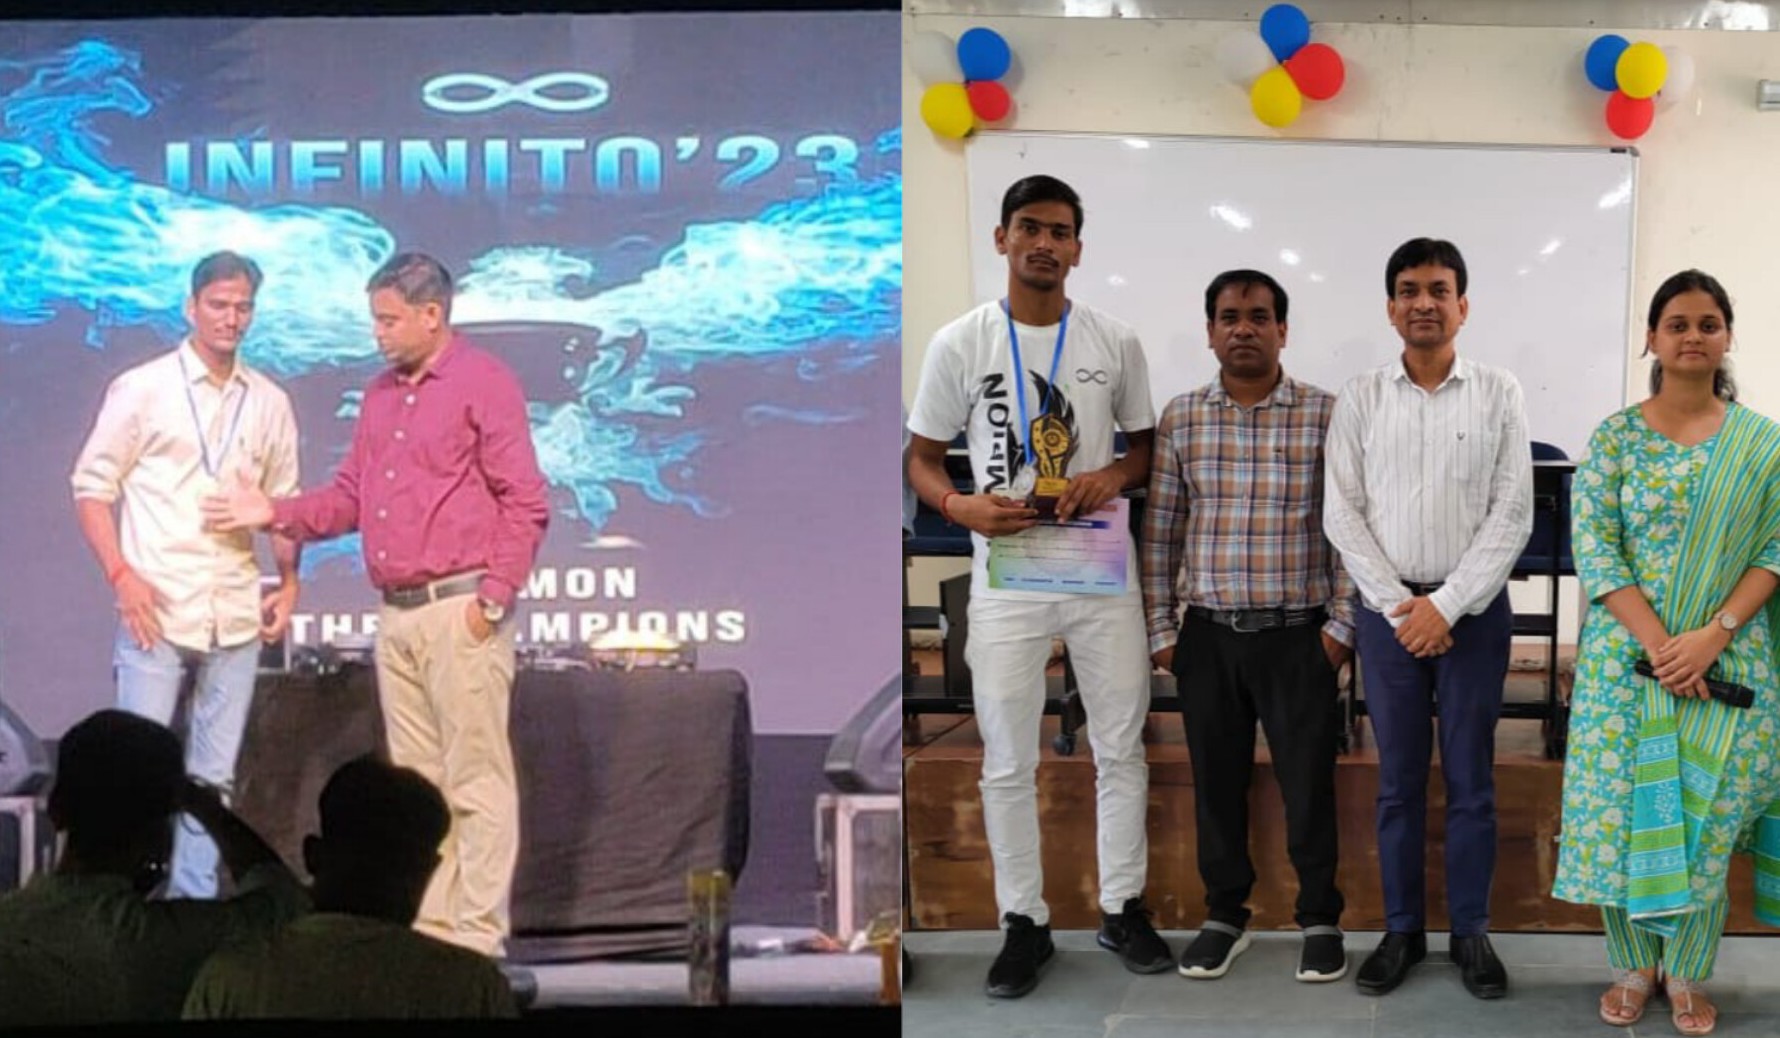 आई.आई.टी. पटना के "इन्फिनिटो वार्षिक खेल उत्सव" में 'गवर्नमेंट इंजिनियरिंग कॉलेज' शेखपुरा, को मिला दूसरा स्थान।